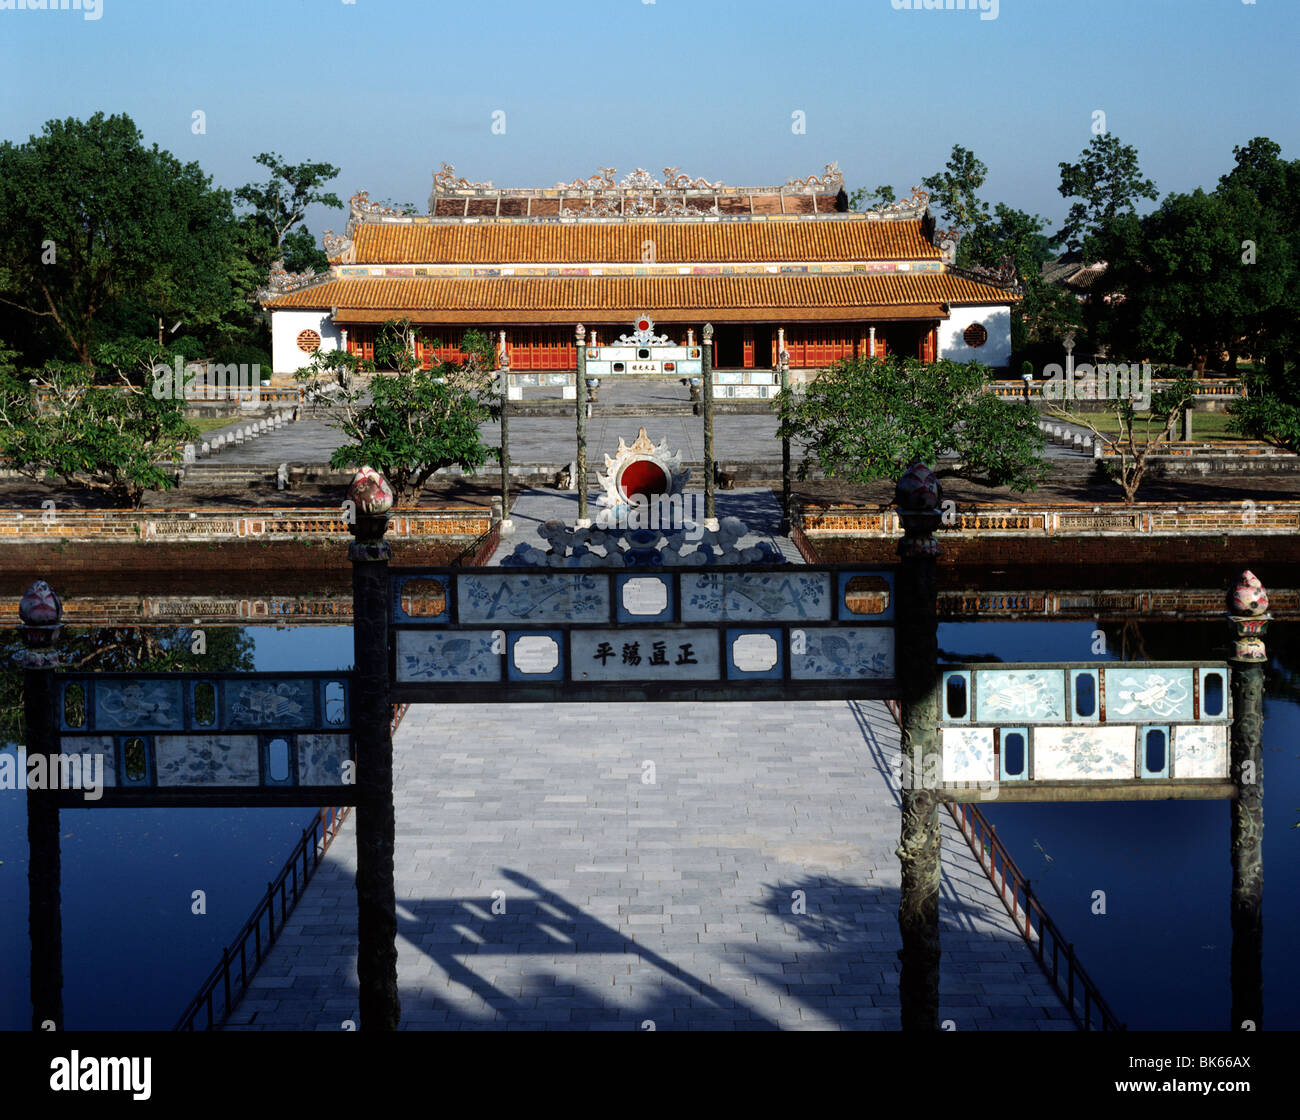 Il Ponte del Golden acque che conduce alla Thai Hoa Palace, la cittadella di Hue, Vietnam, Indocina, Asia sud-orientale, Asia Foto Stock